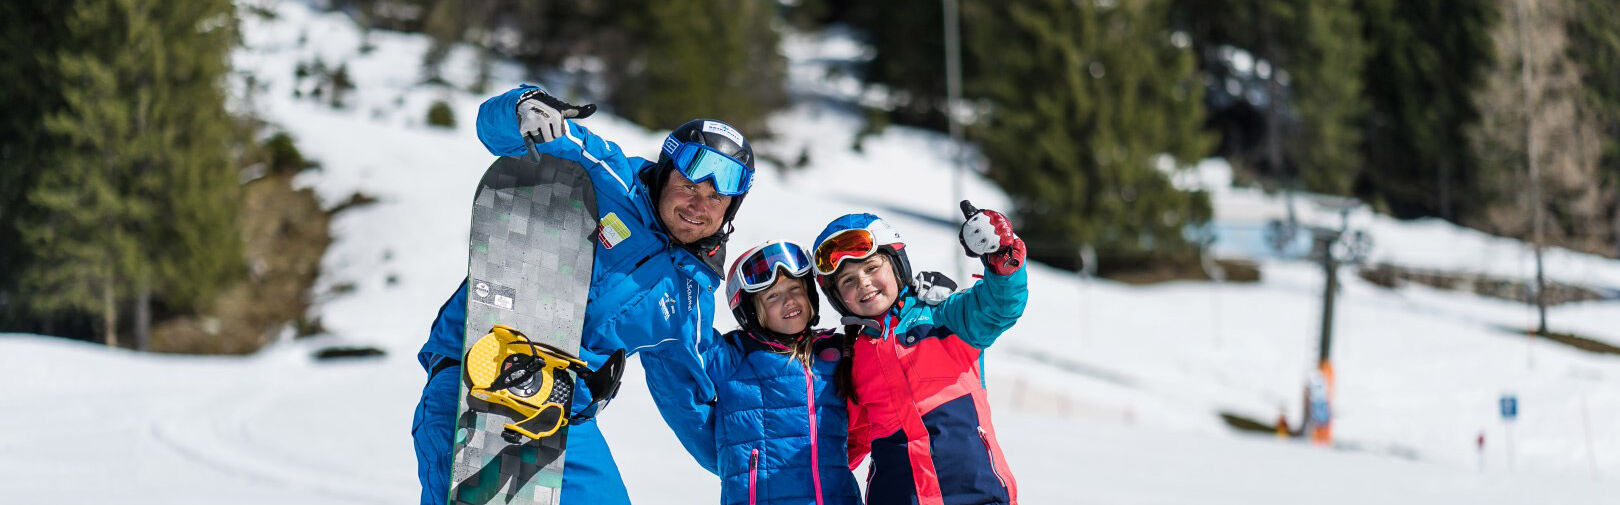 Snowboarden lernen in Flachau - Snowboard Gruppenkurse für Anfänger bis Profis